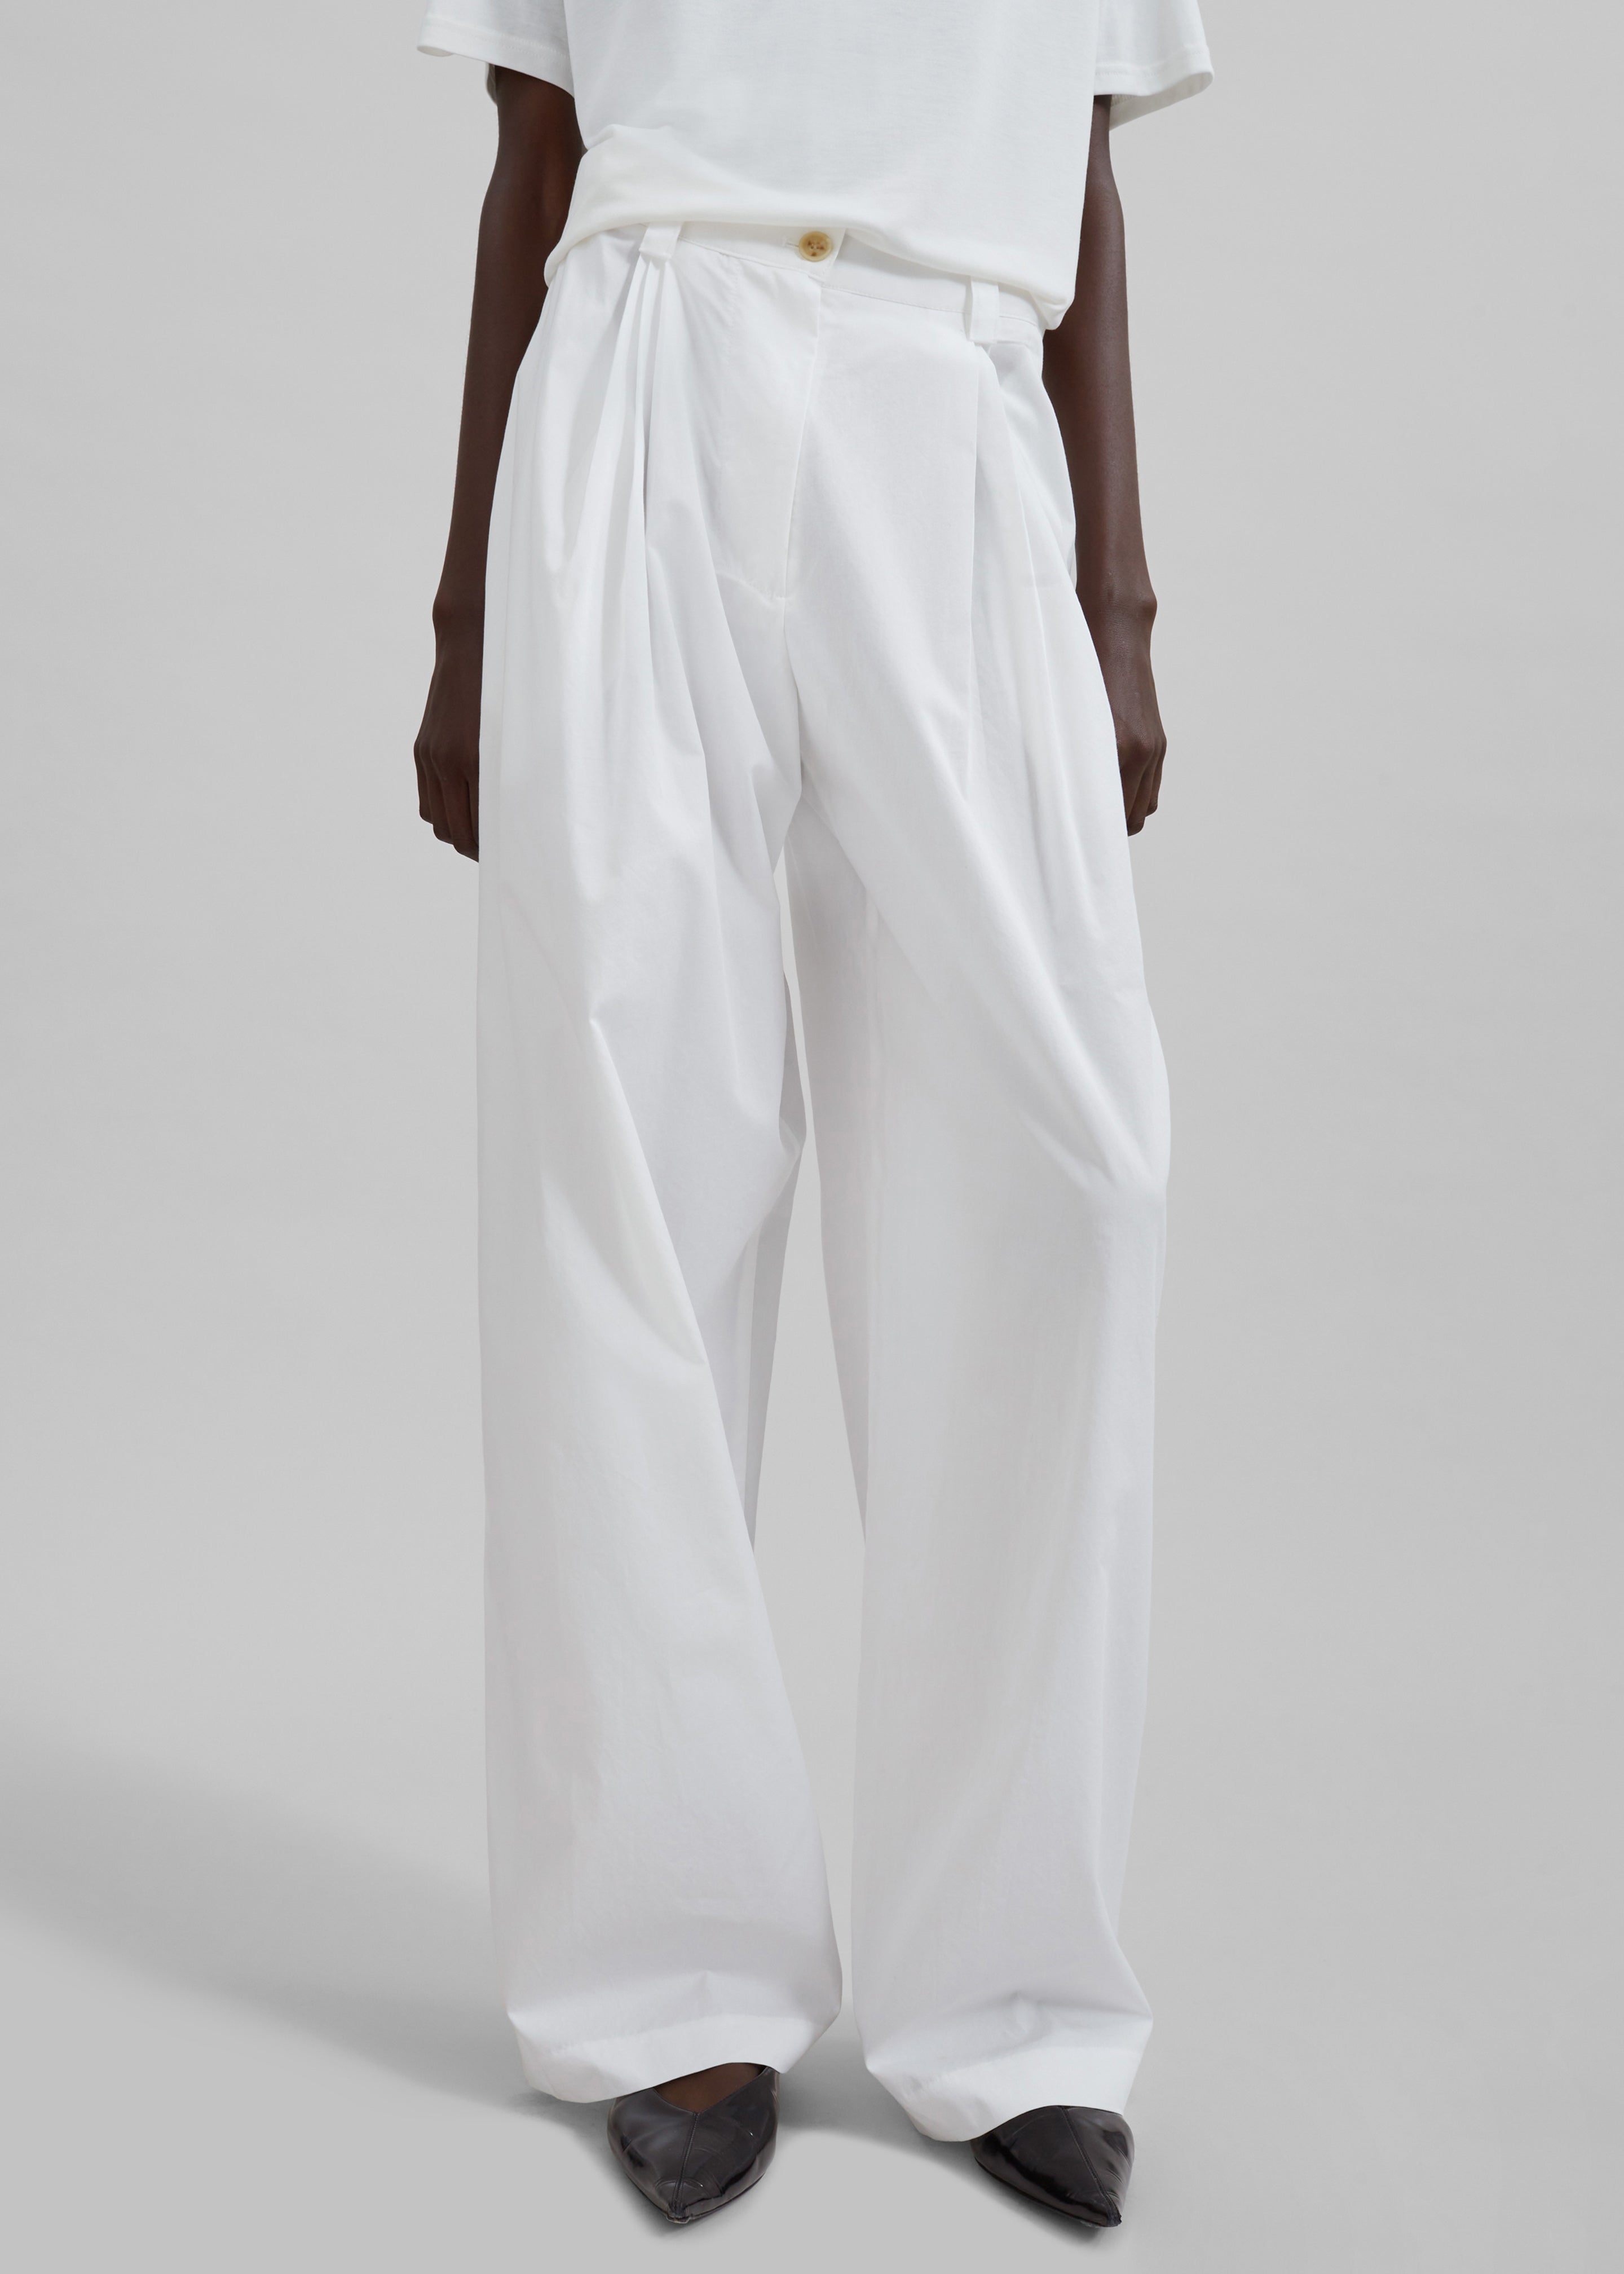 Lea Cotton Trousers - White - 1